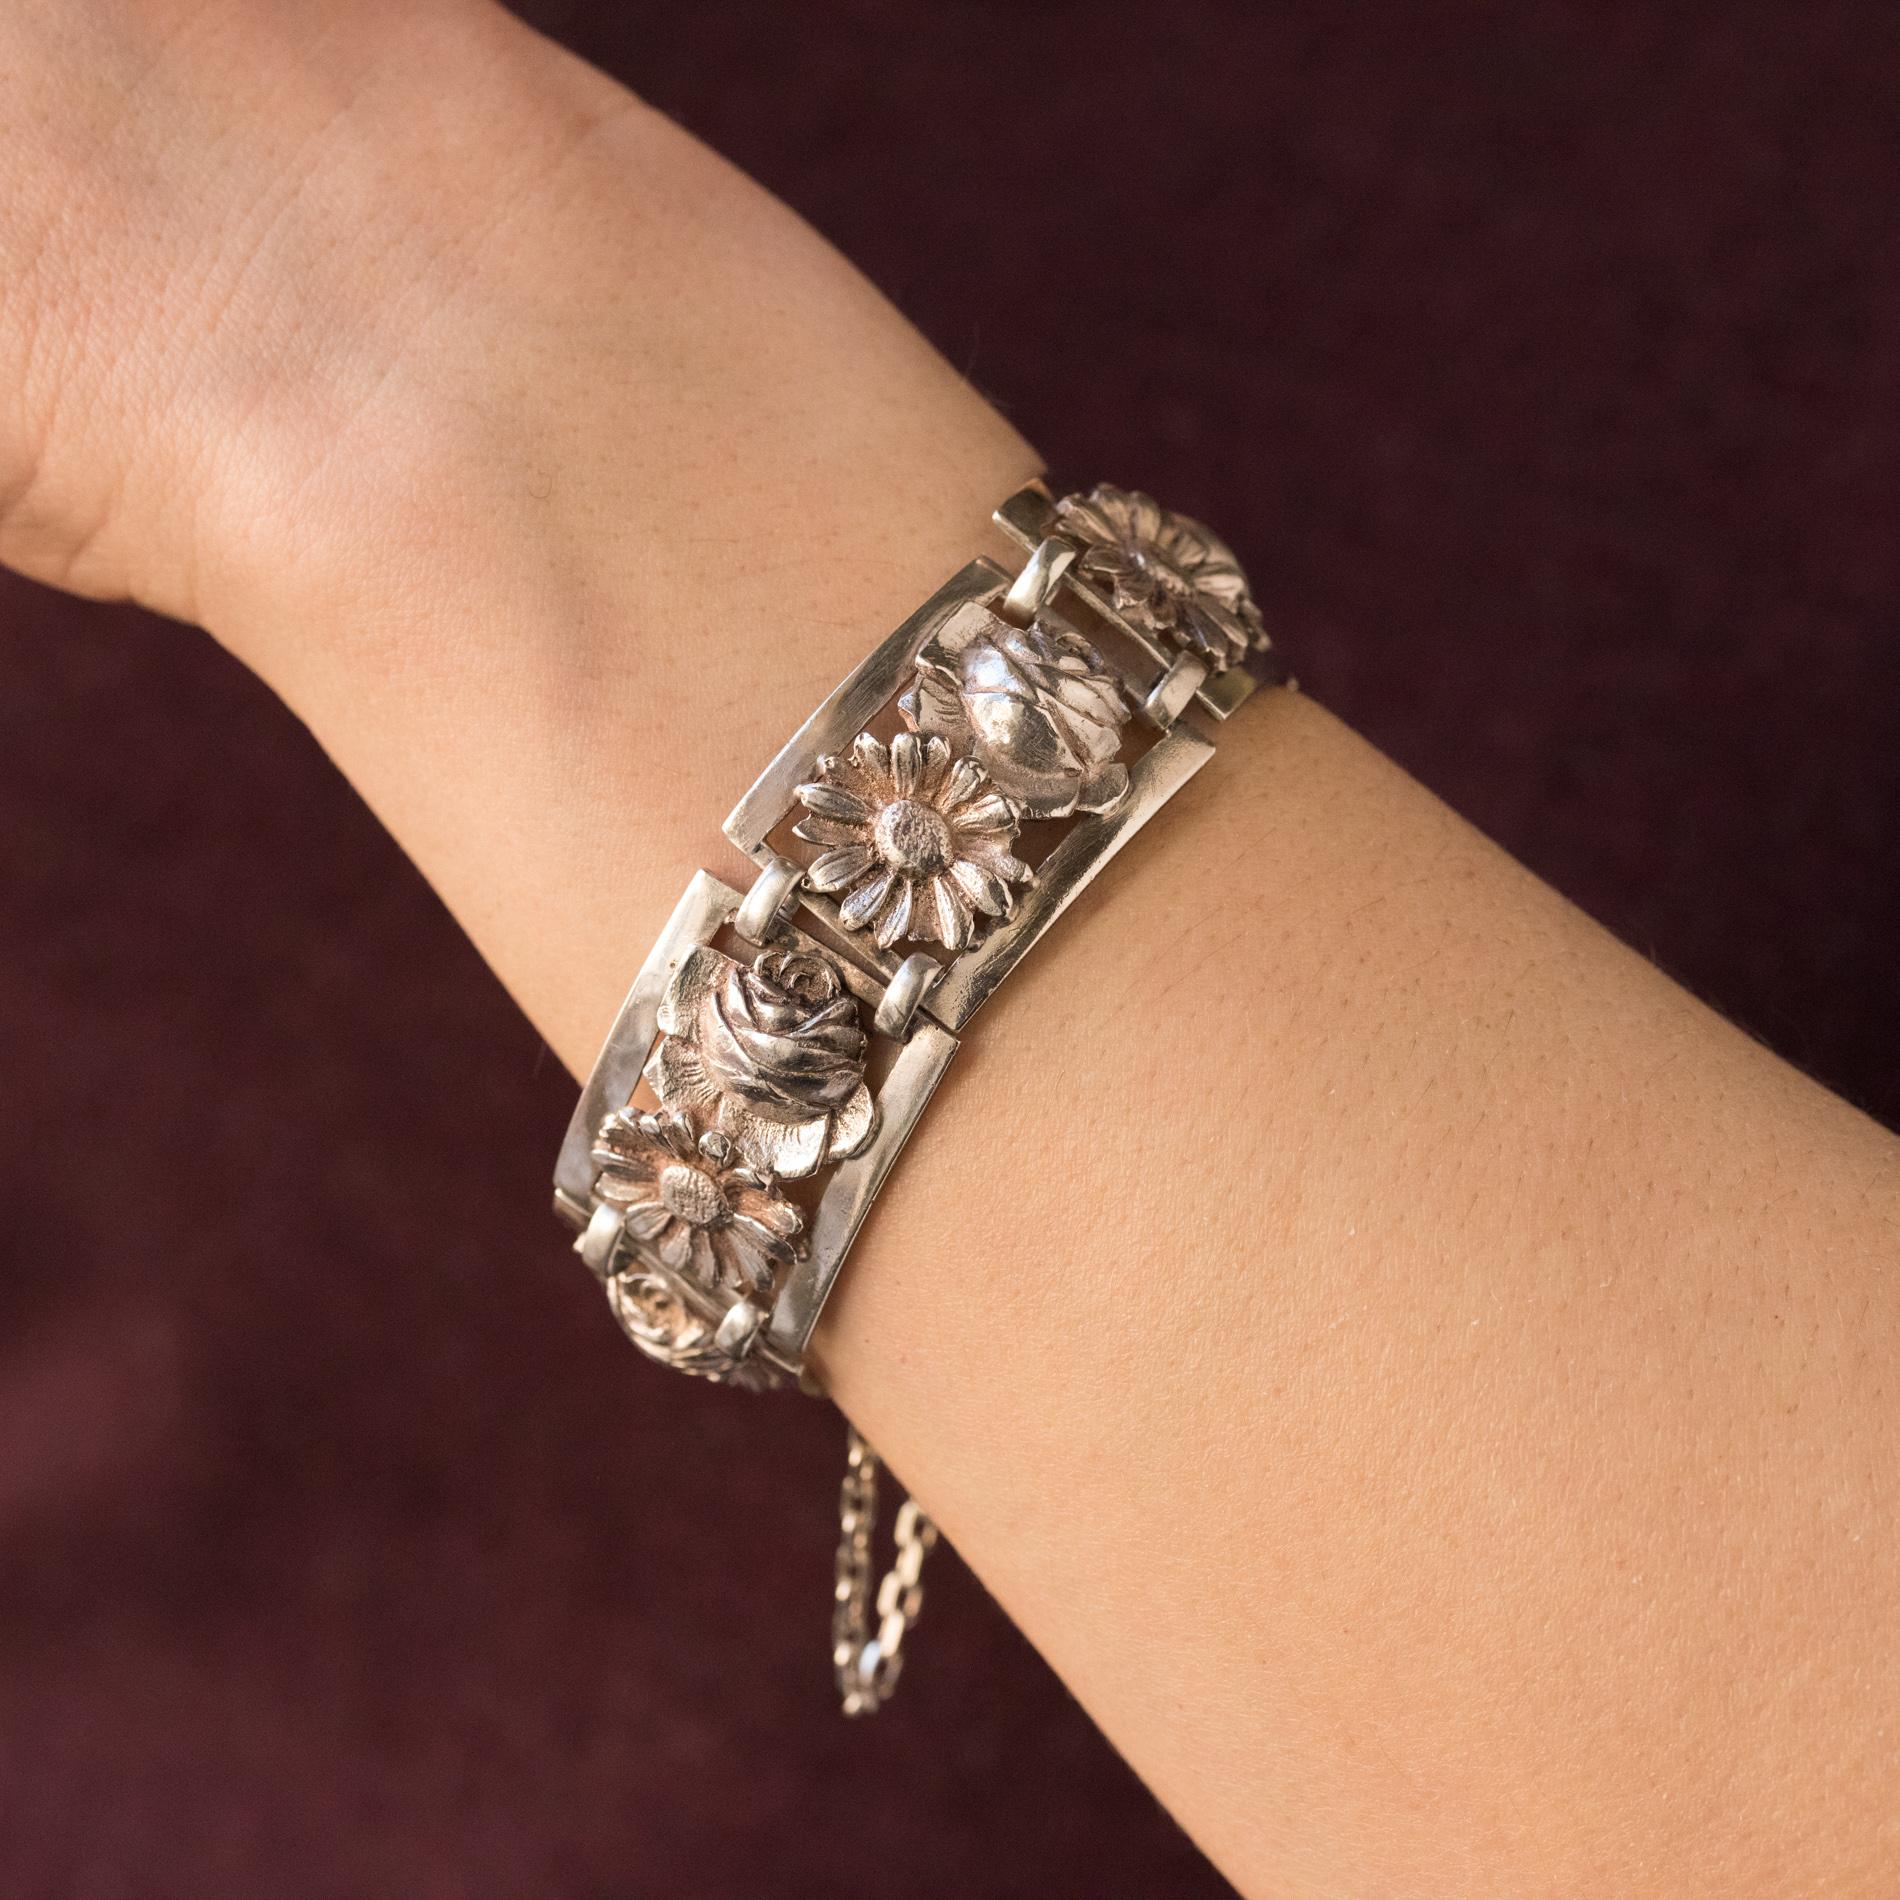 Armband aus Silber, Krabbenpunze.
Jahrhundert. Es besteht aus rechteckigen Mustern, die jeweils mit einer Rose und einem Gänseblümchen verziert und durch zwei längliche Ringe miteinander verbunden sind. Der Verschluss ist ein Klappratschenverschluss